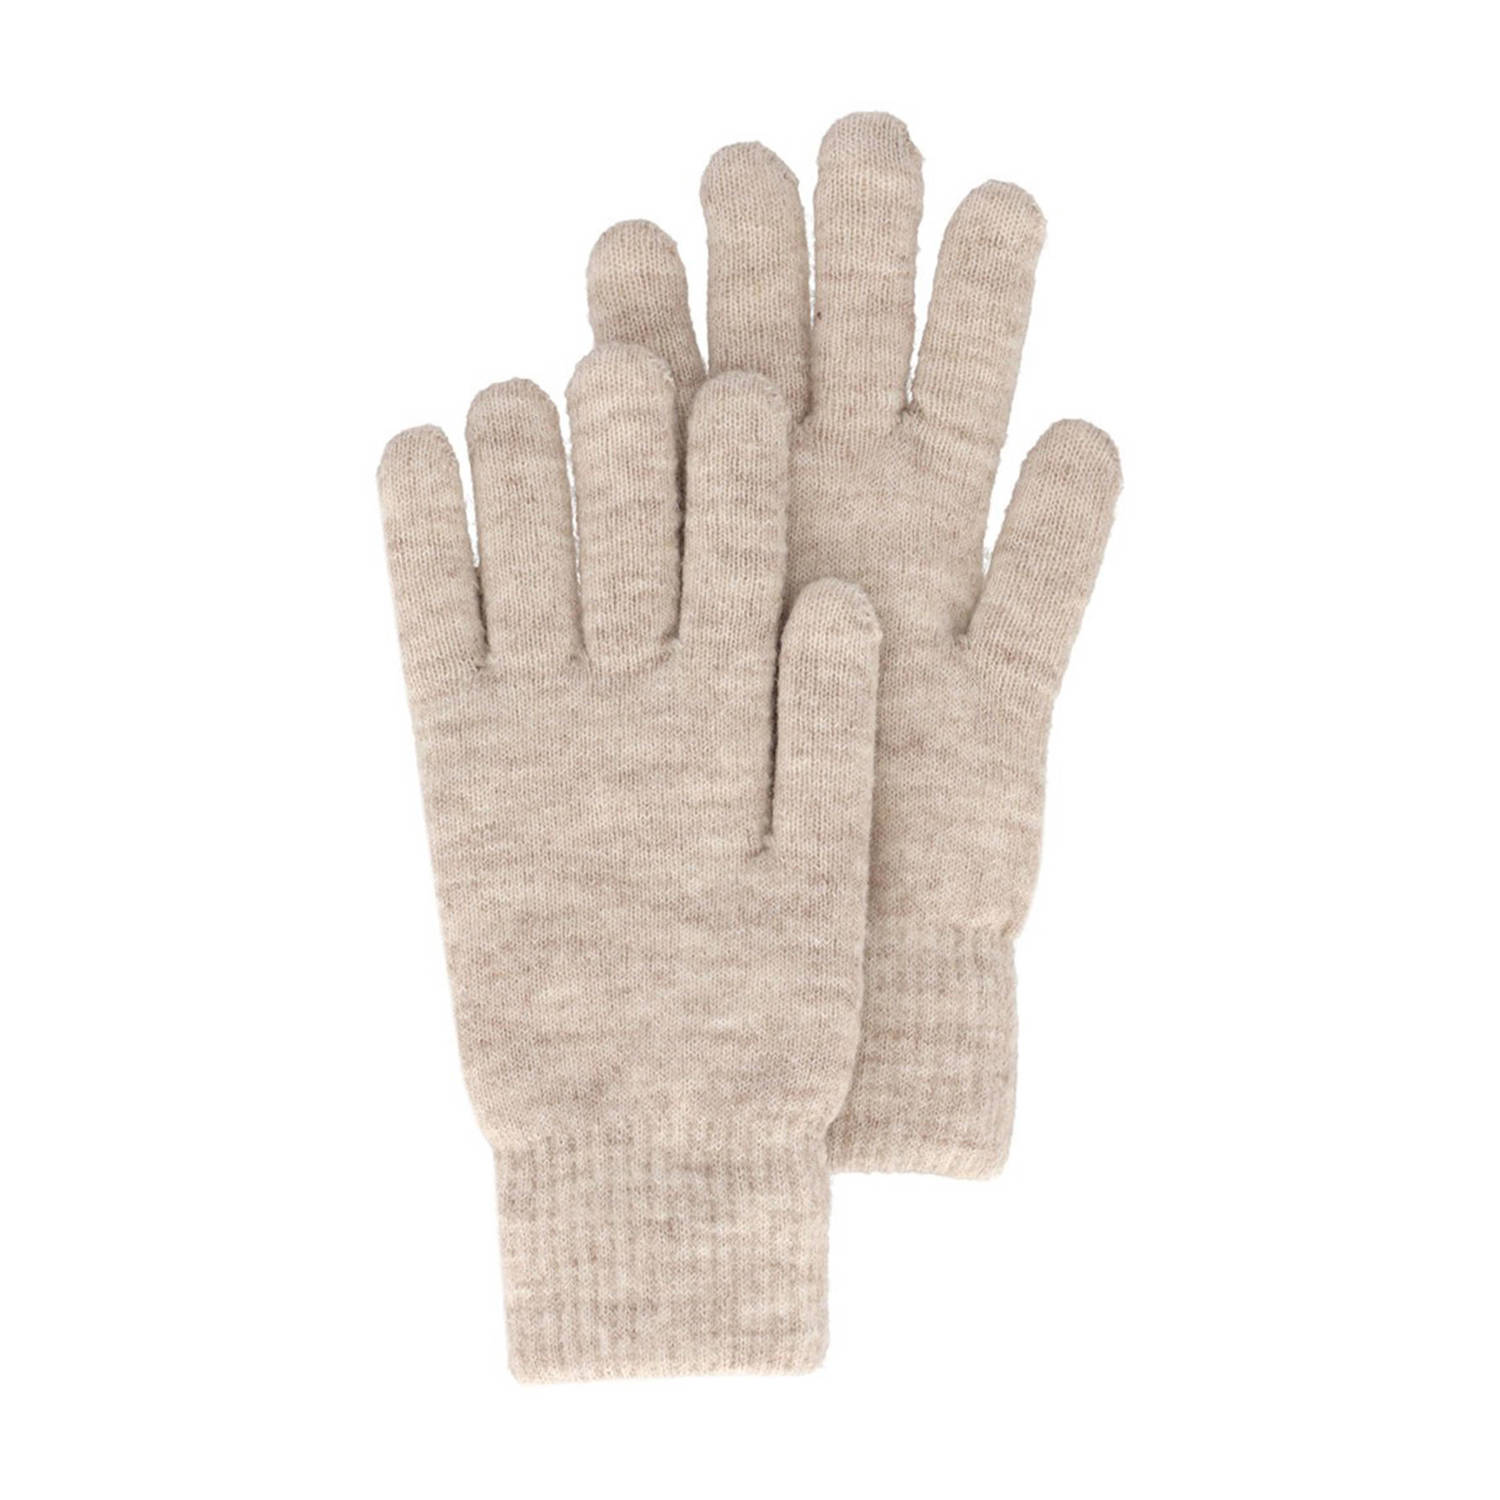 Sarlini handschoenen beige